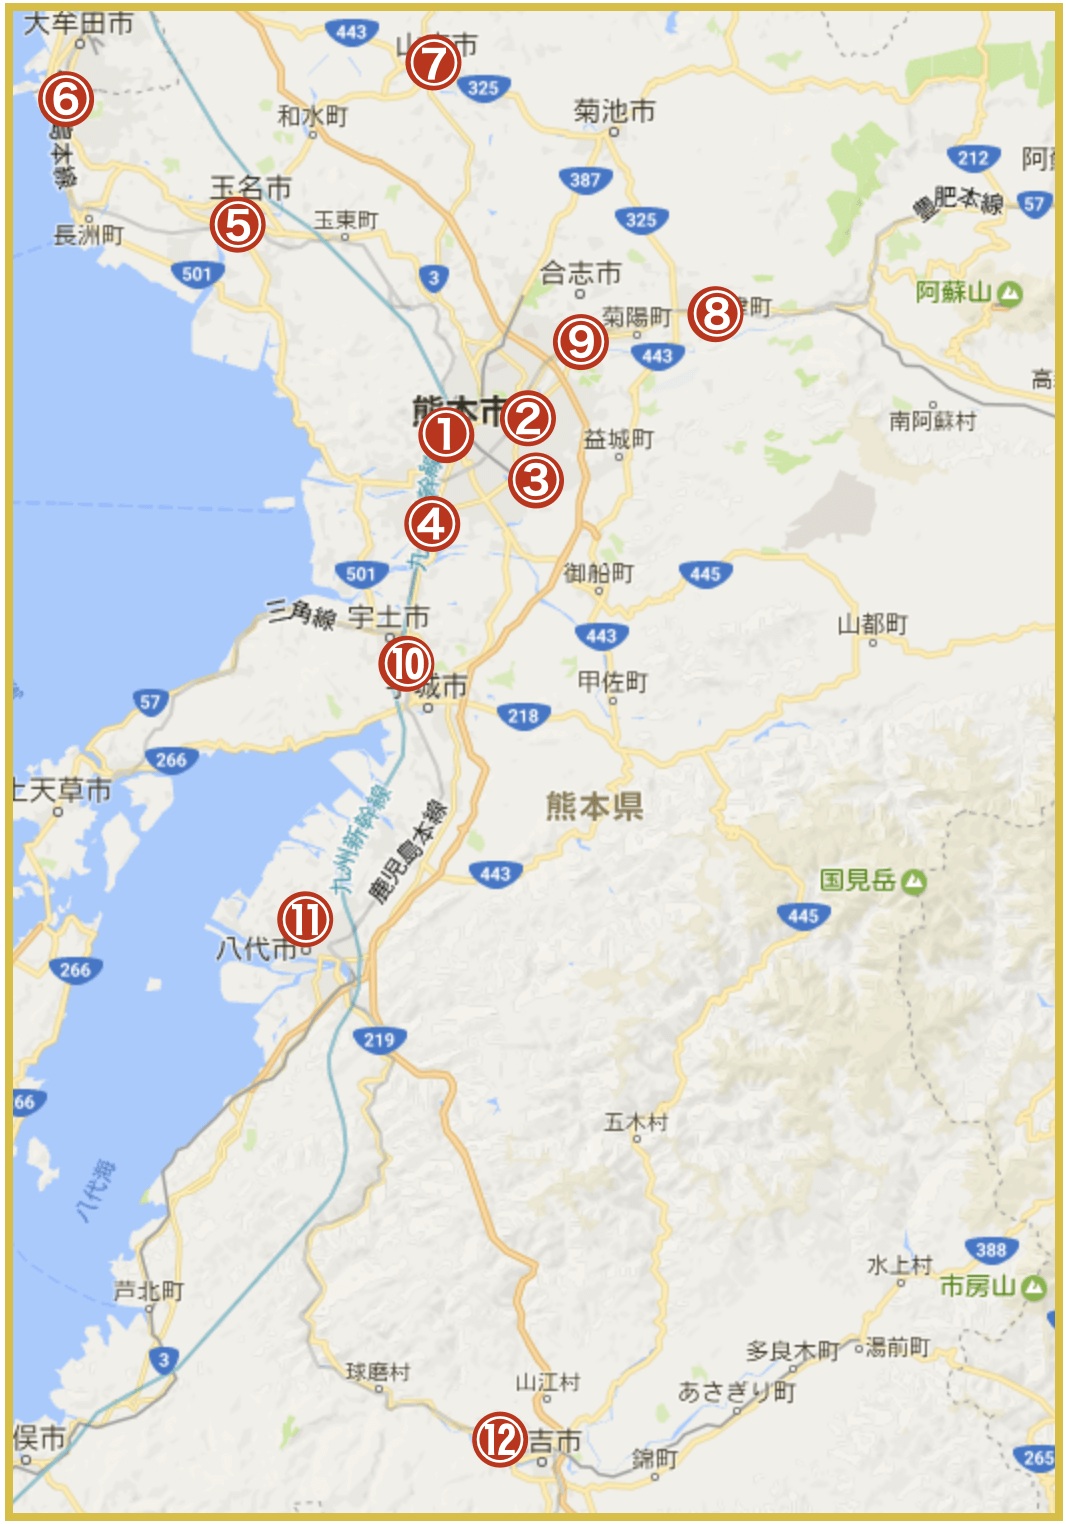 熊本県にあるアイフル店舗・ATMの位置（2020年版）